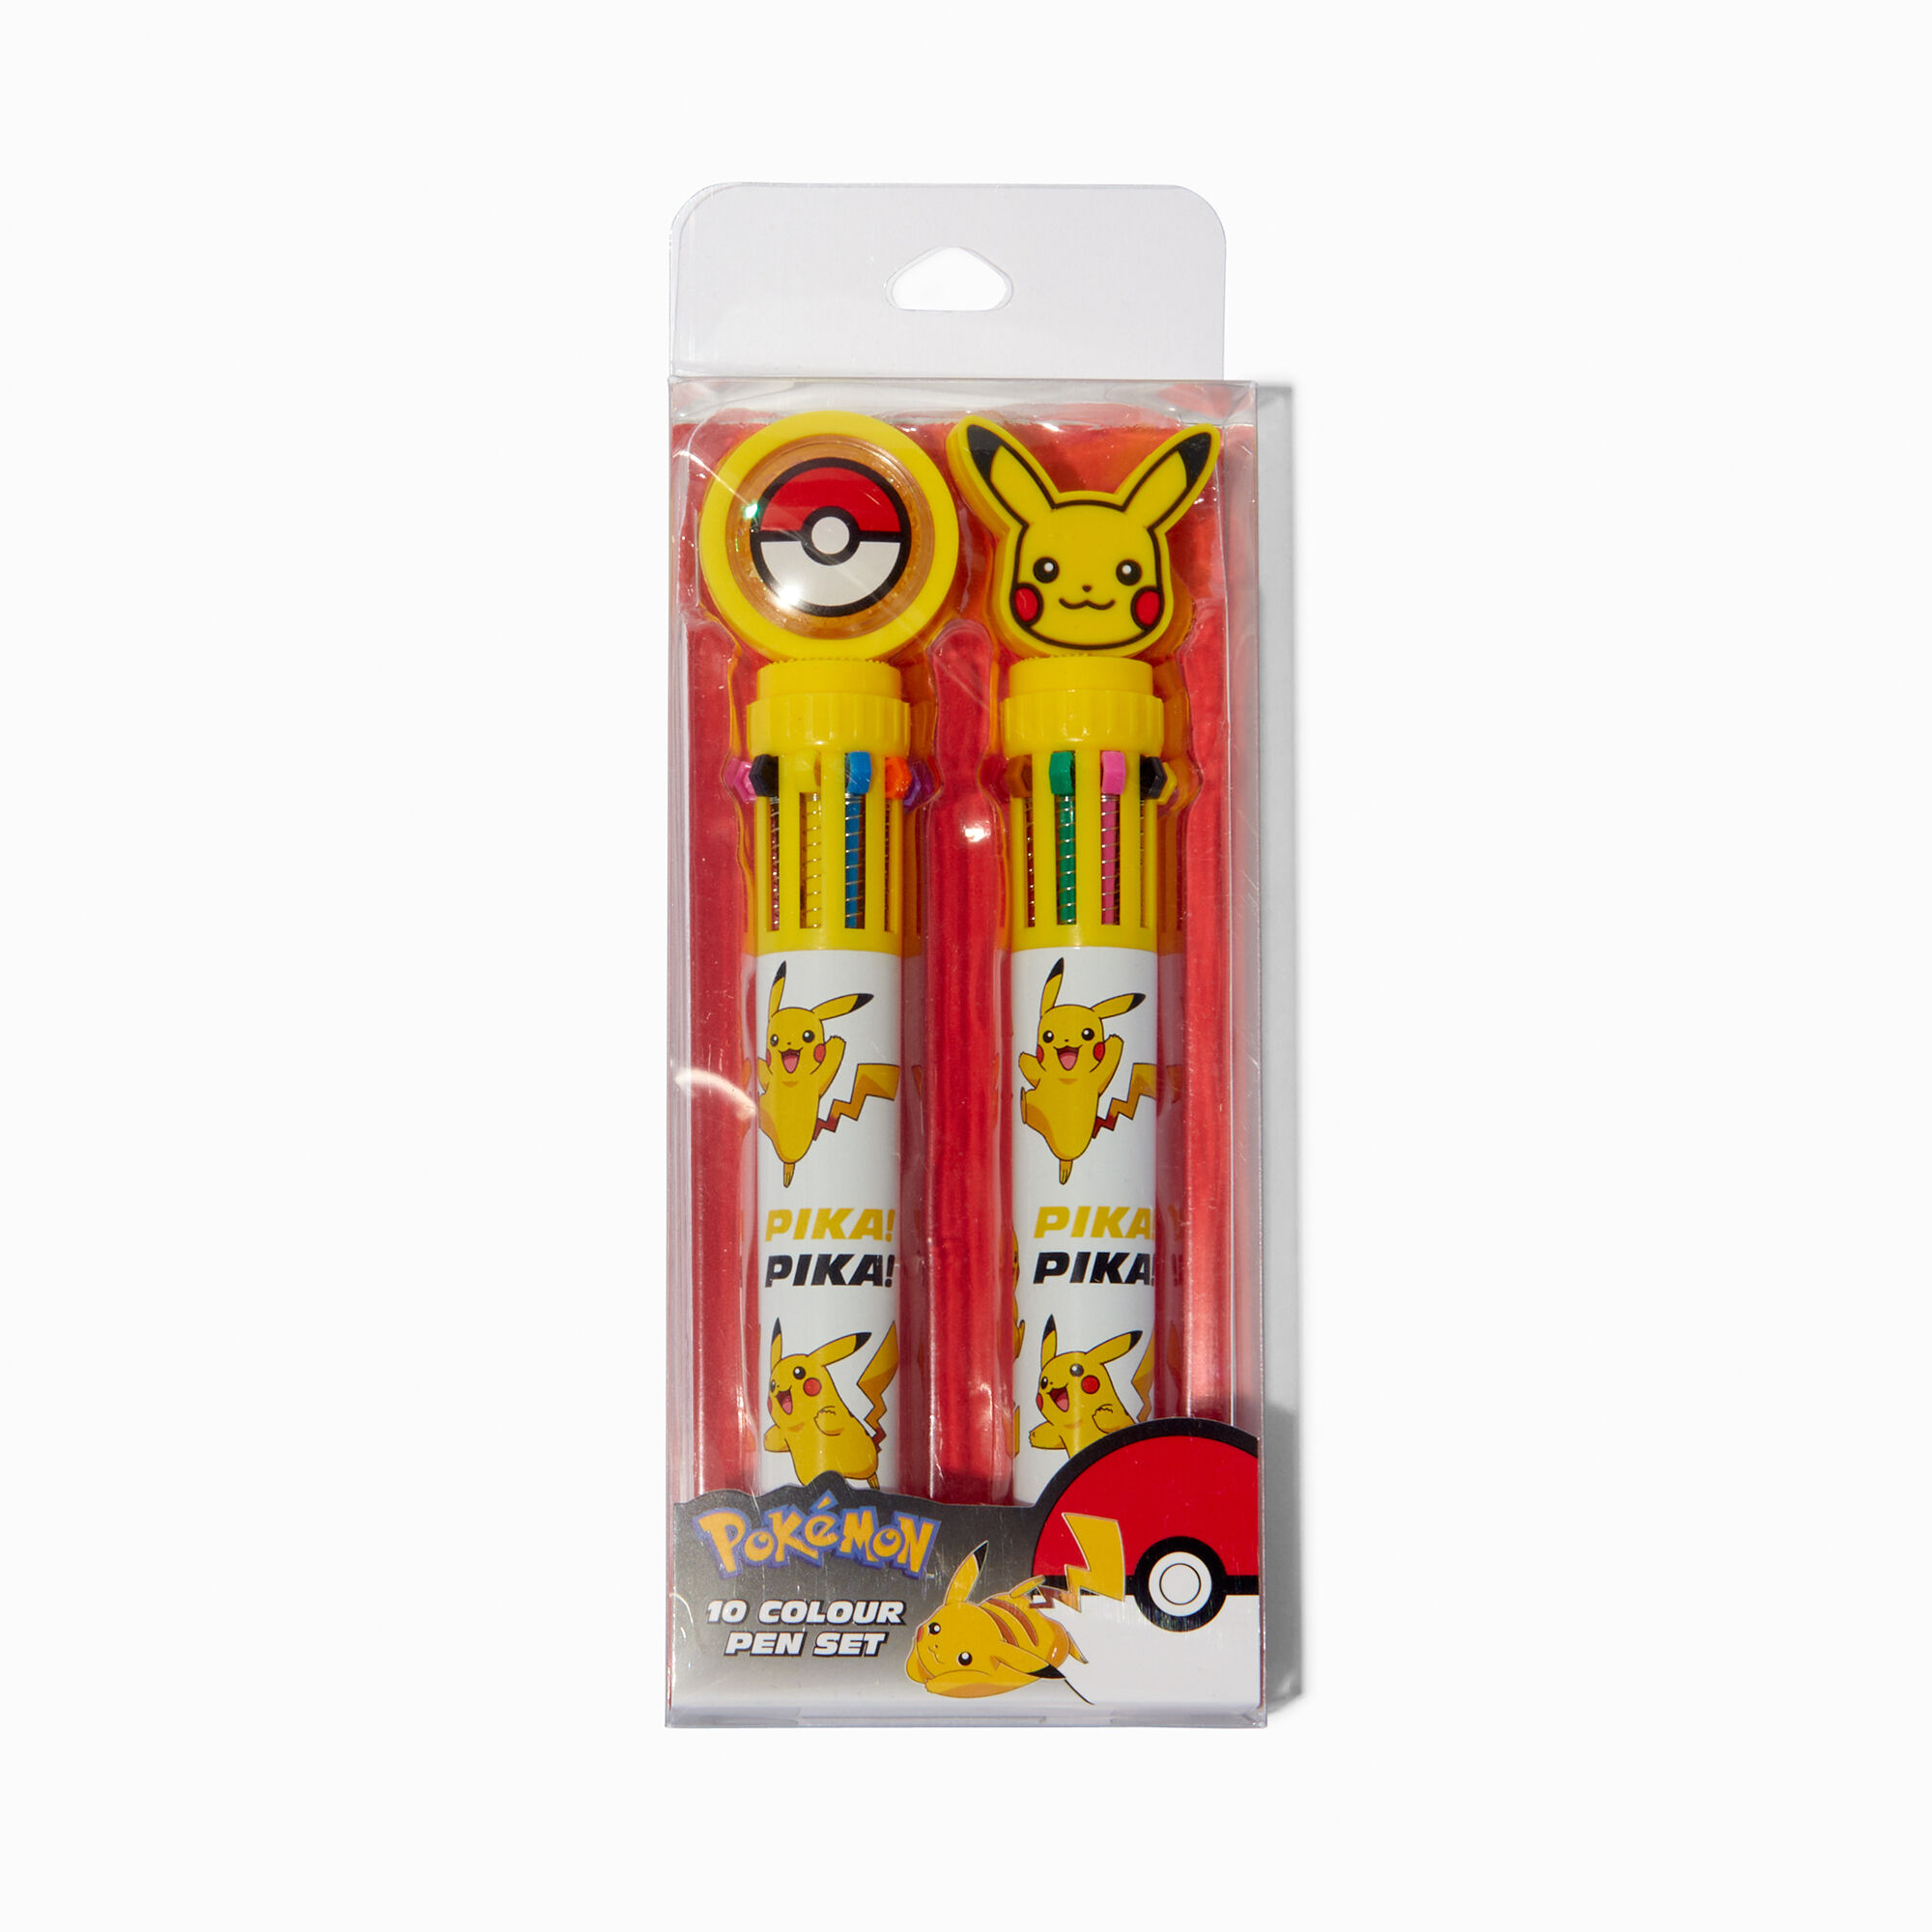 View Claires Pokémon Multicolored Pen Set 2 Pack information